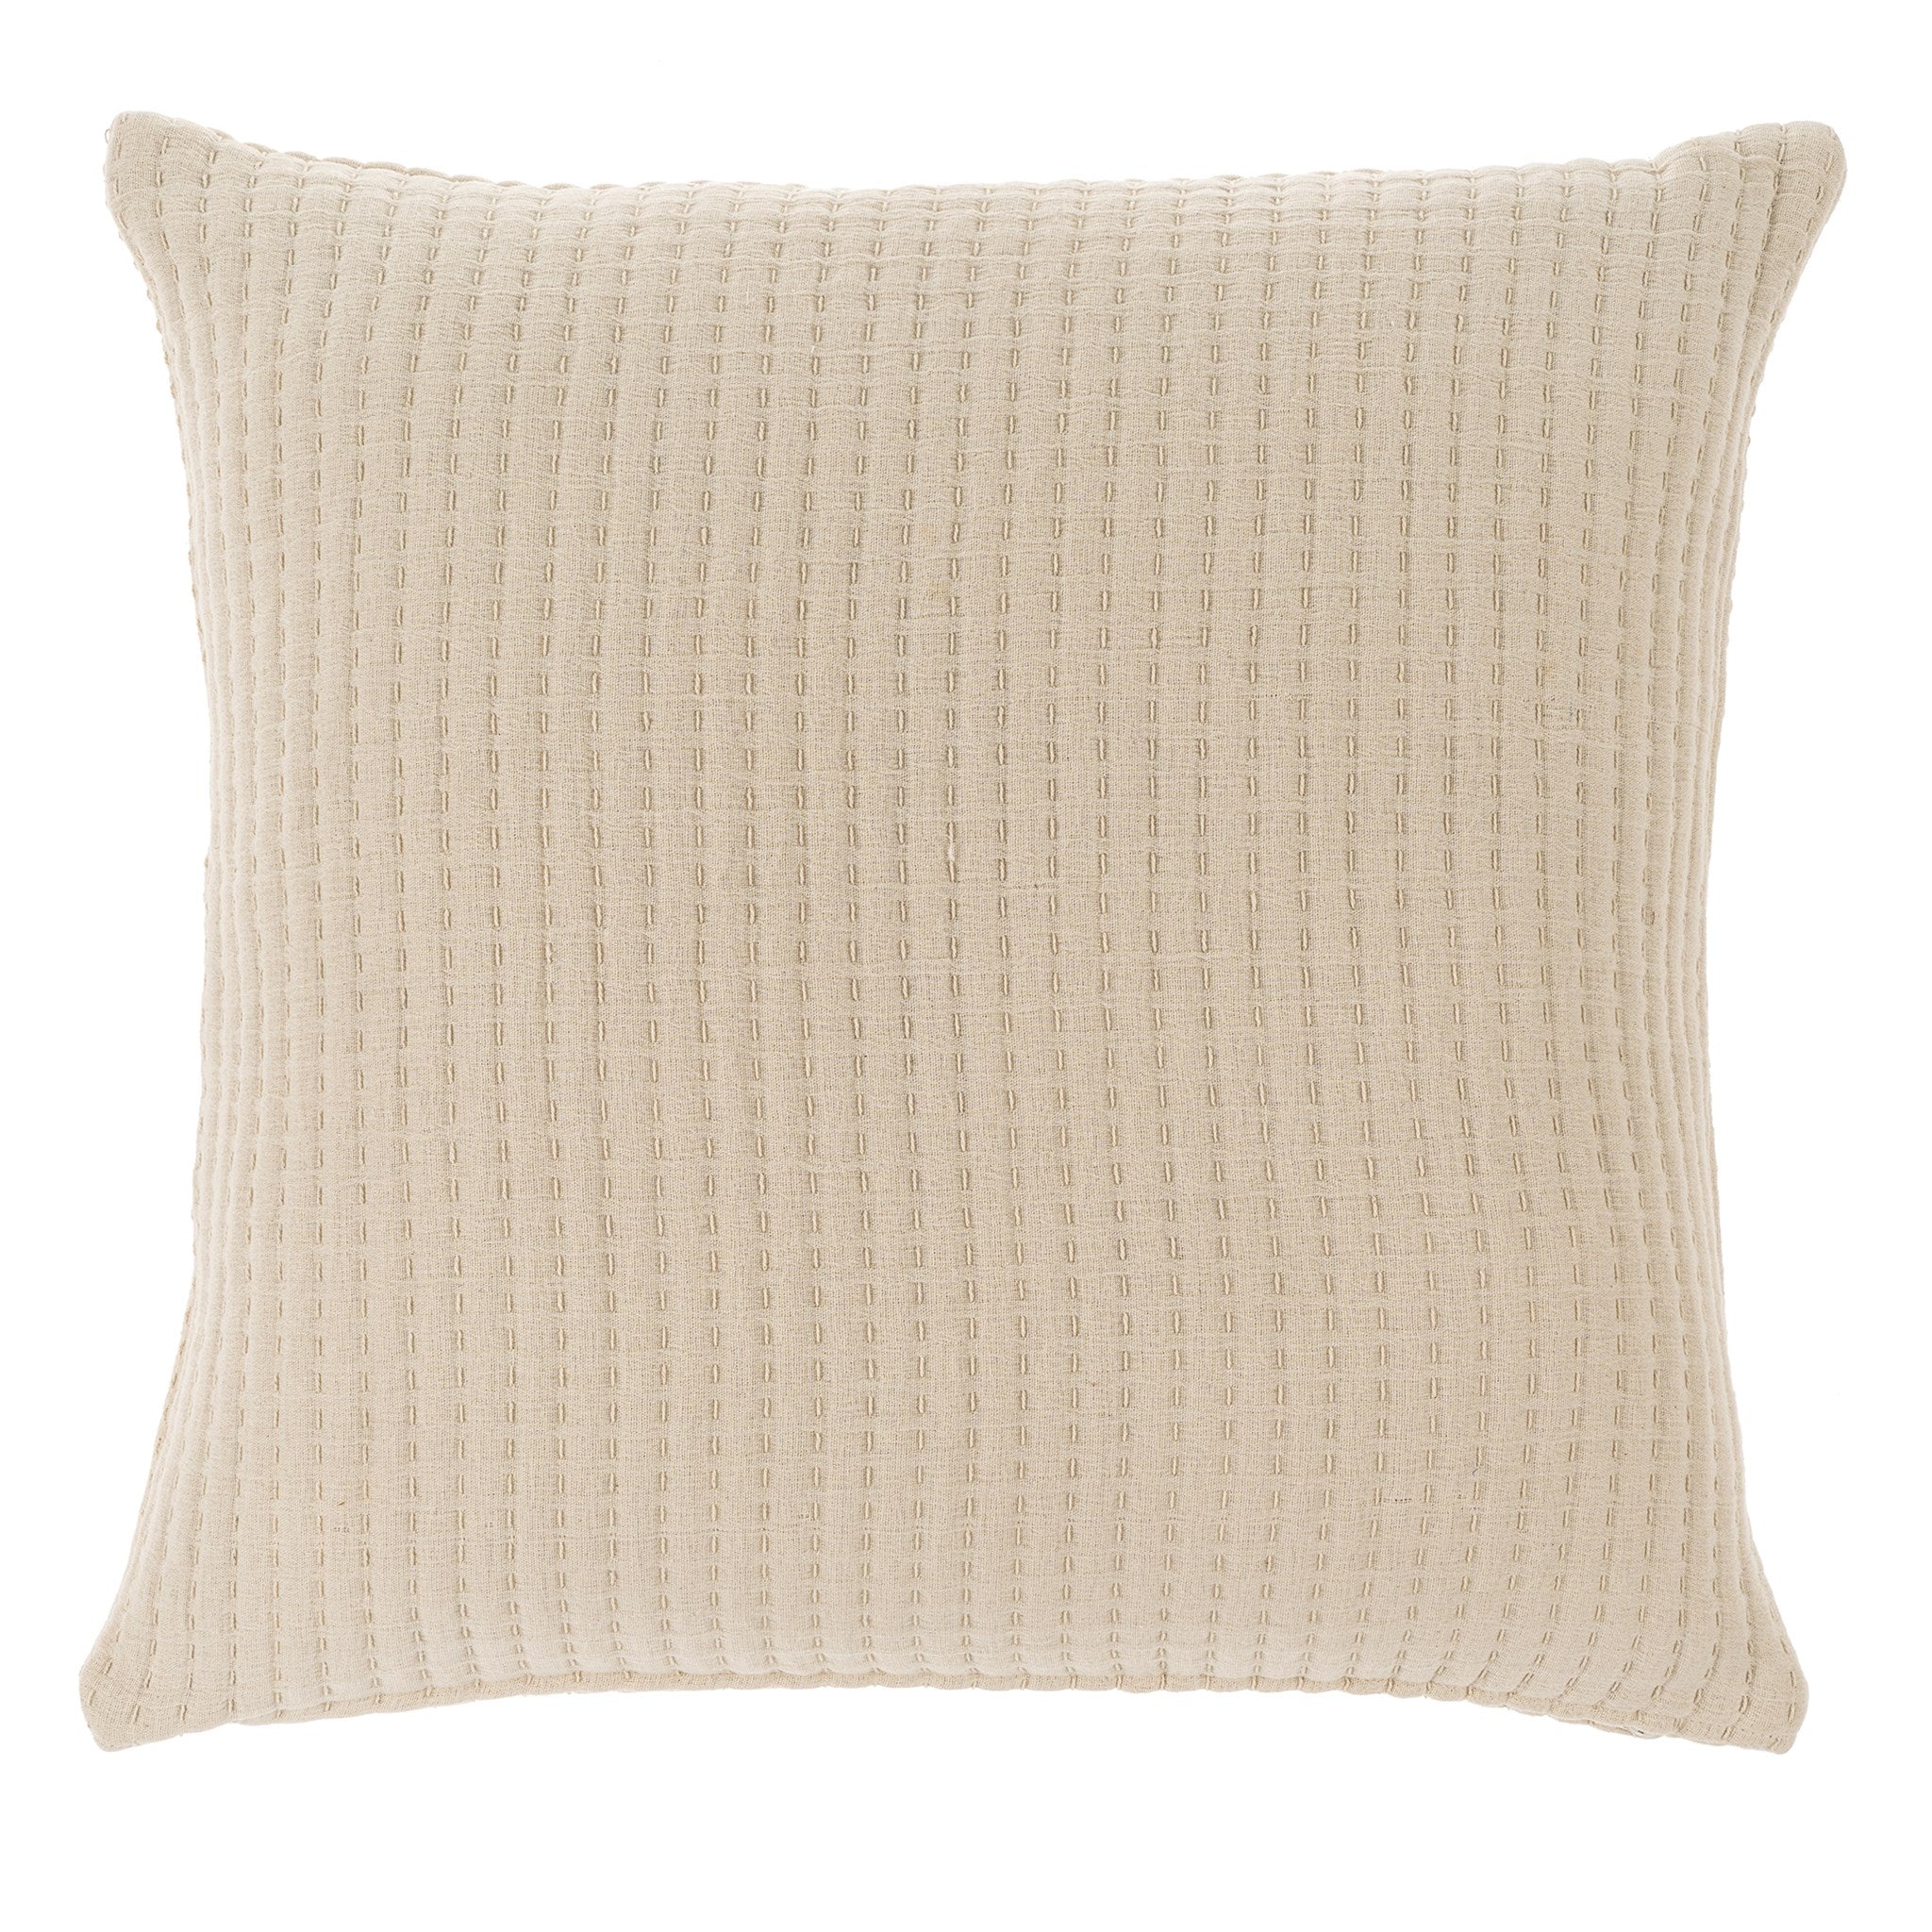 Stitch Pillow Cream, 24 x24